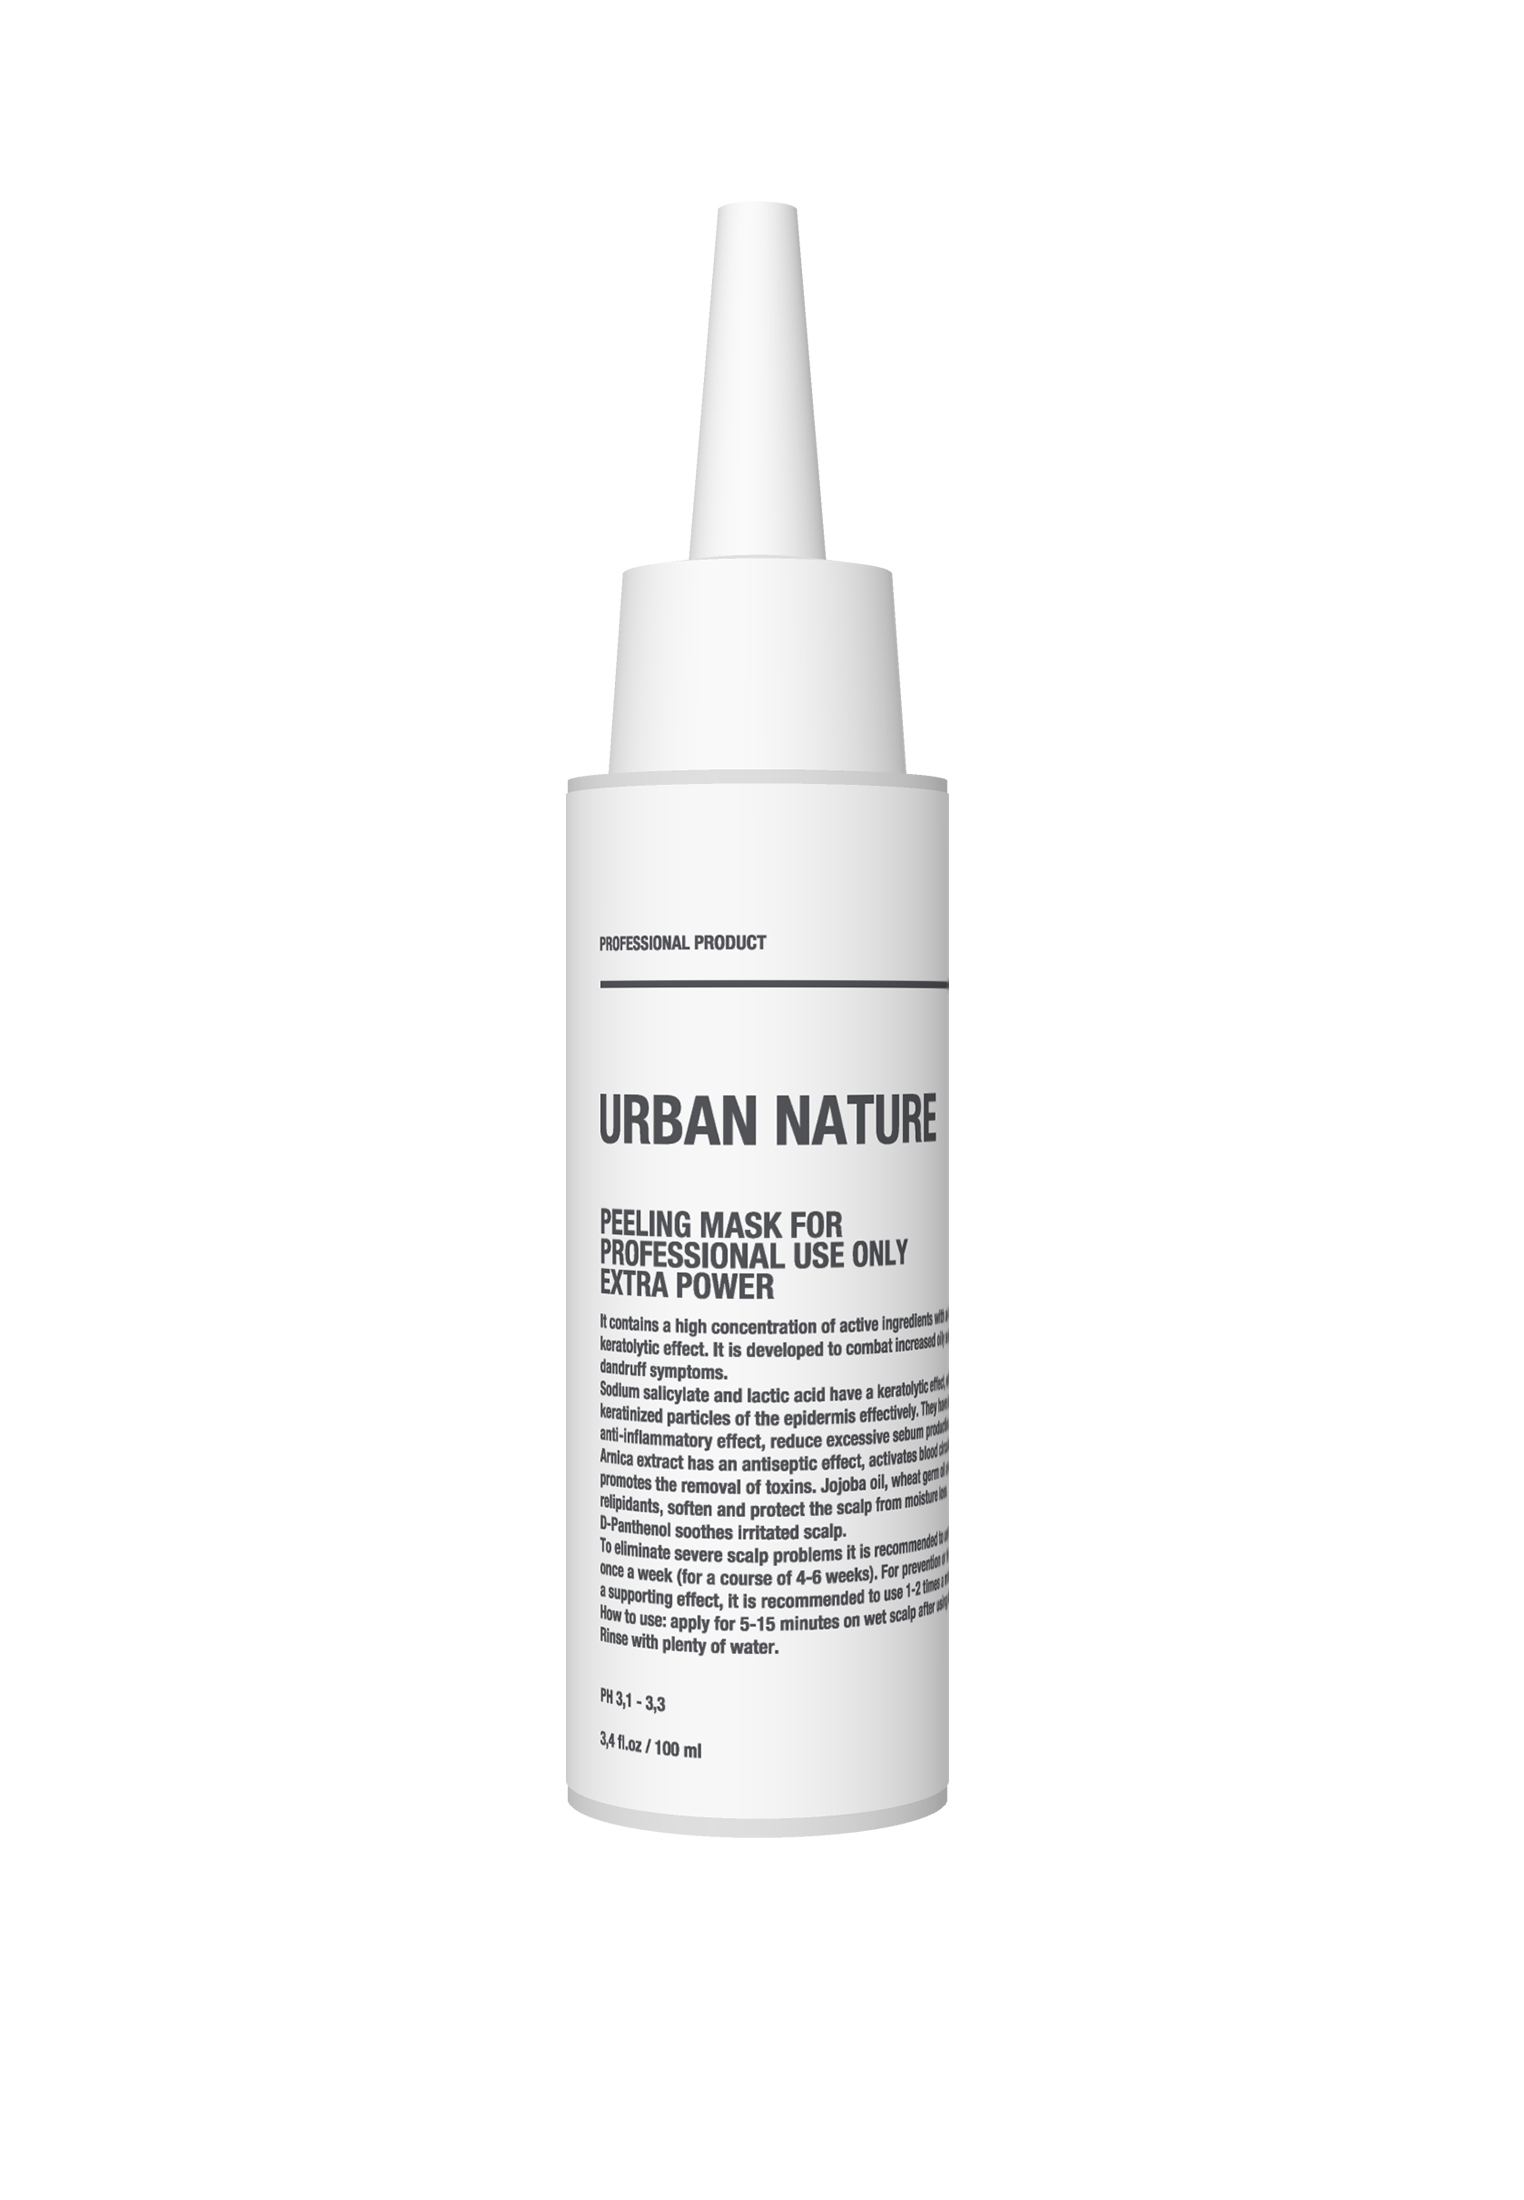 Маска-пилинг URBAN NATURE для очищения головы и волос для проф применения 100 мл